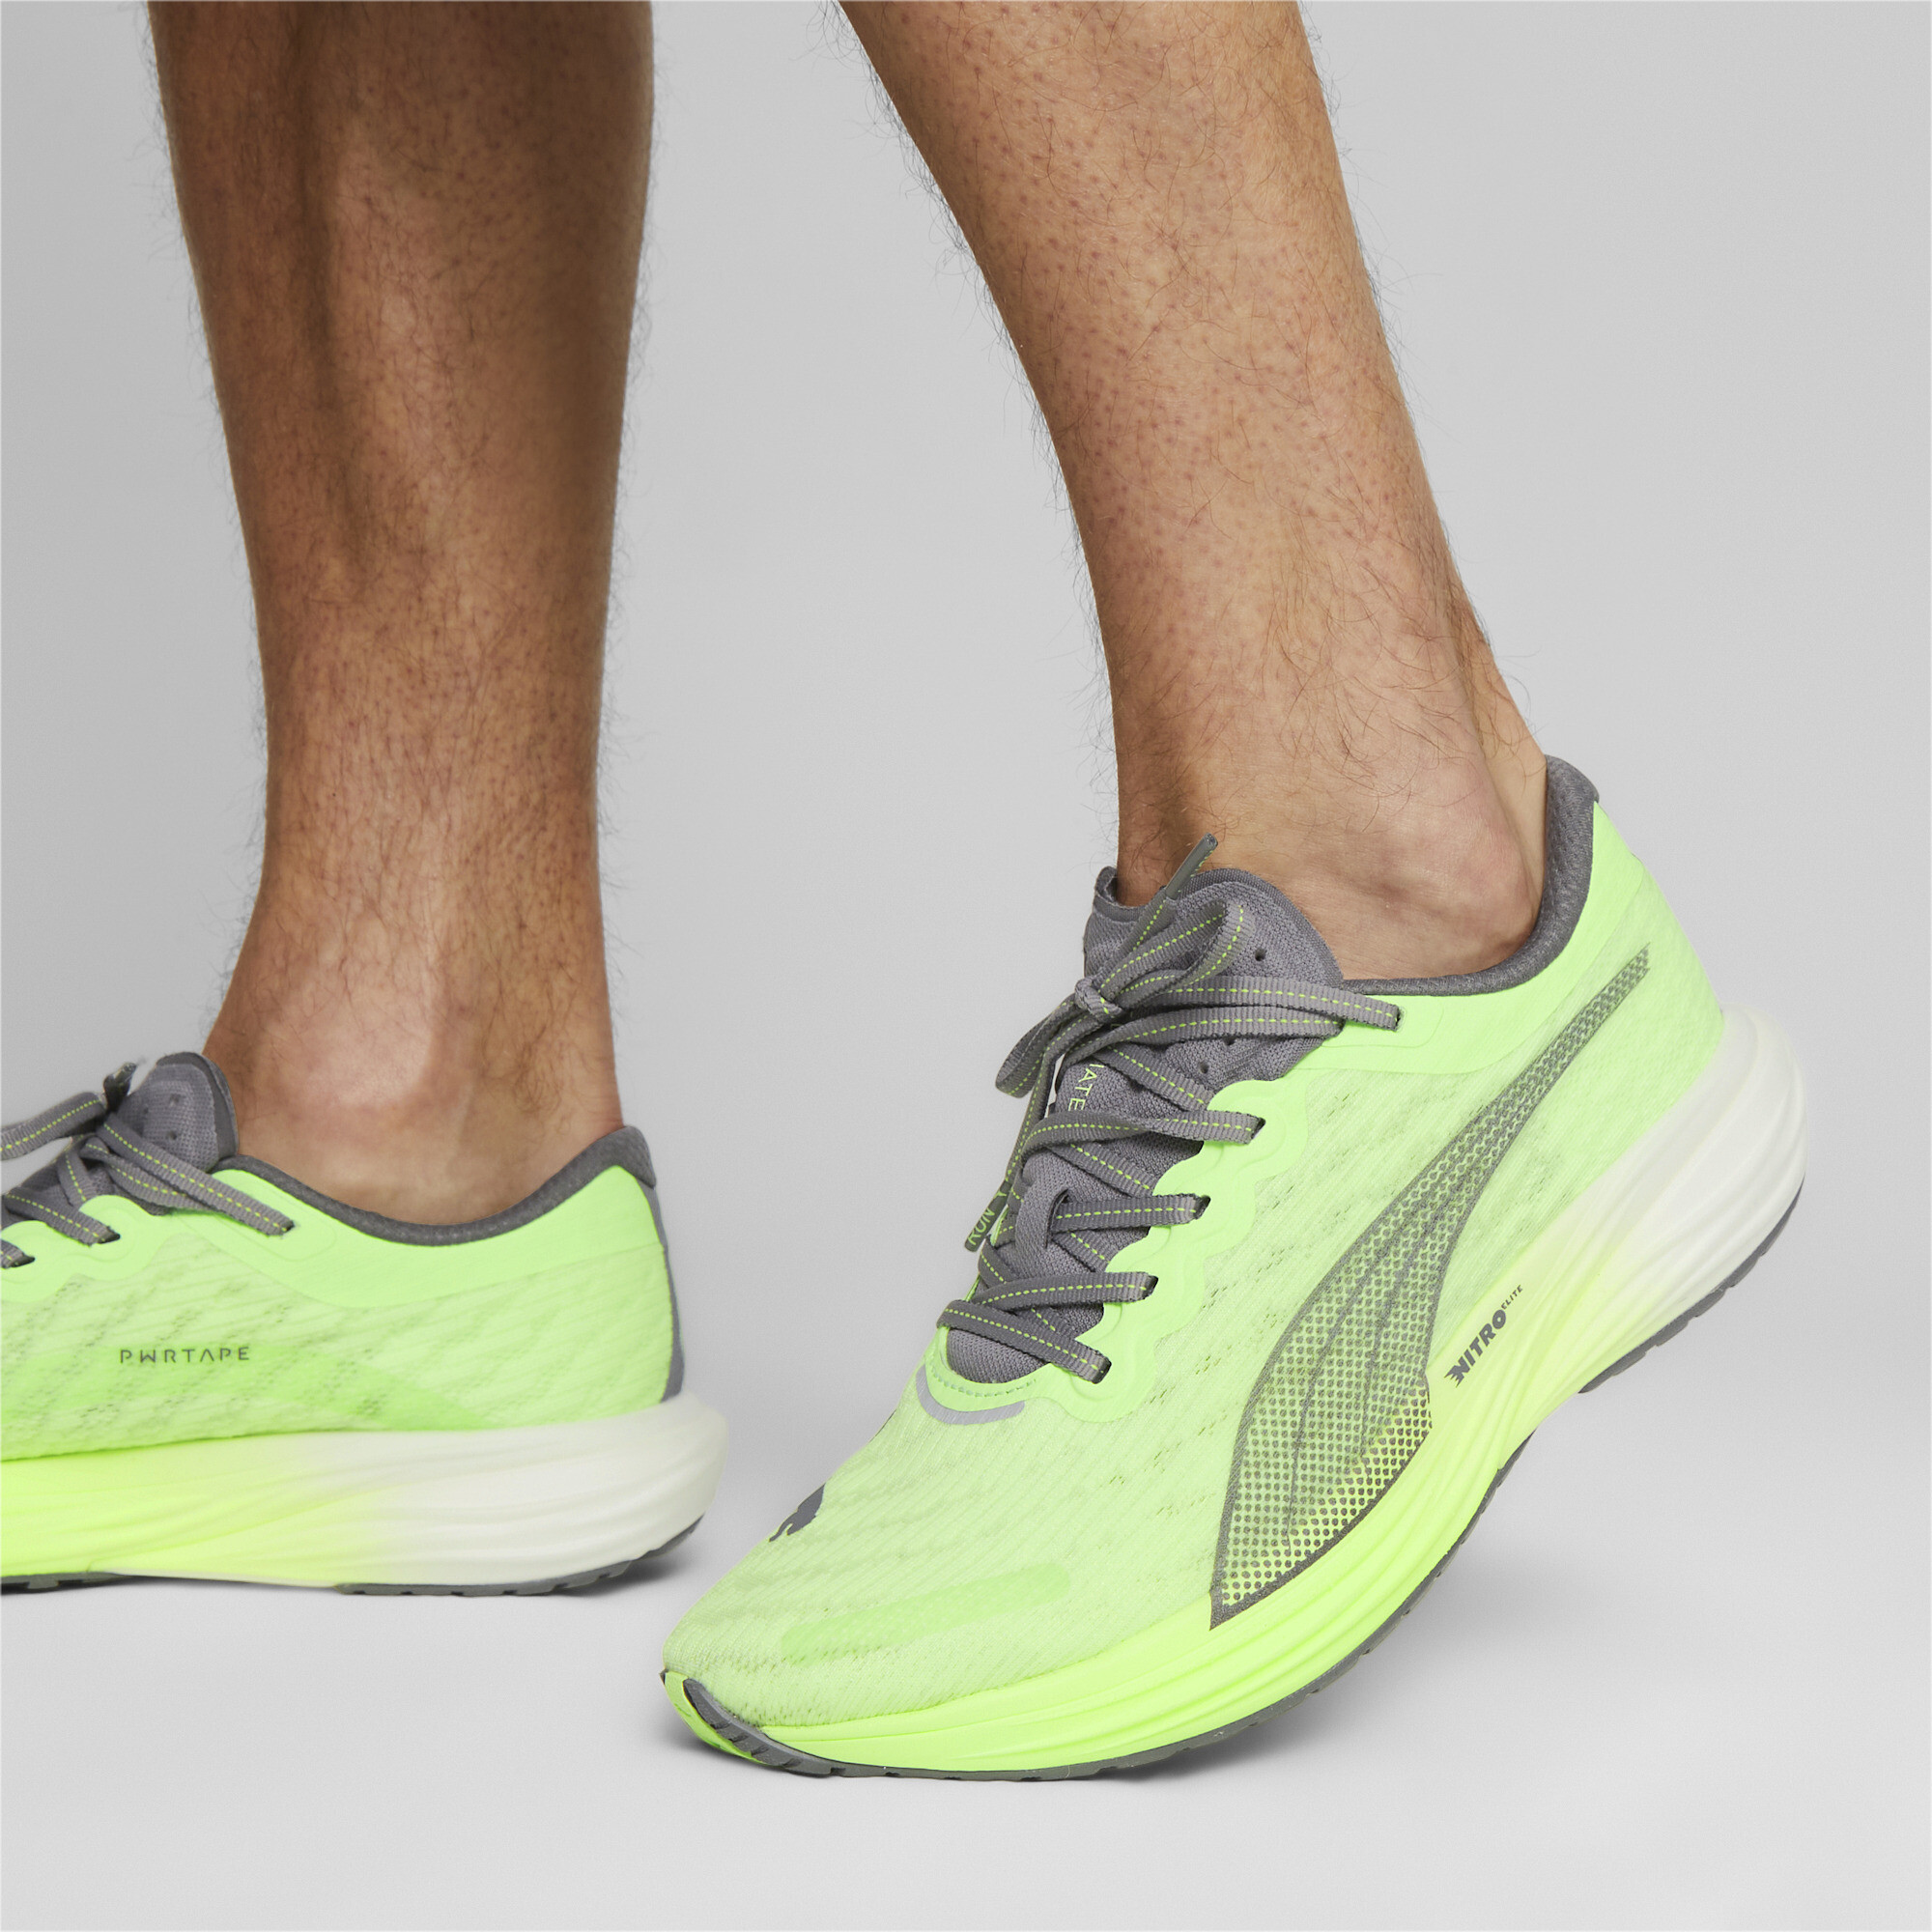 Men's PUMA Deviate NITROâ¢ 2 Running Shoes In Green, Size EU 43